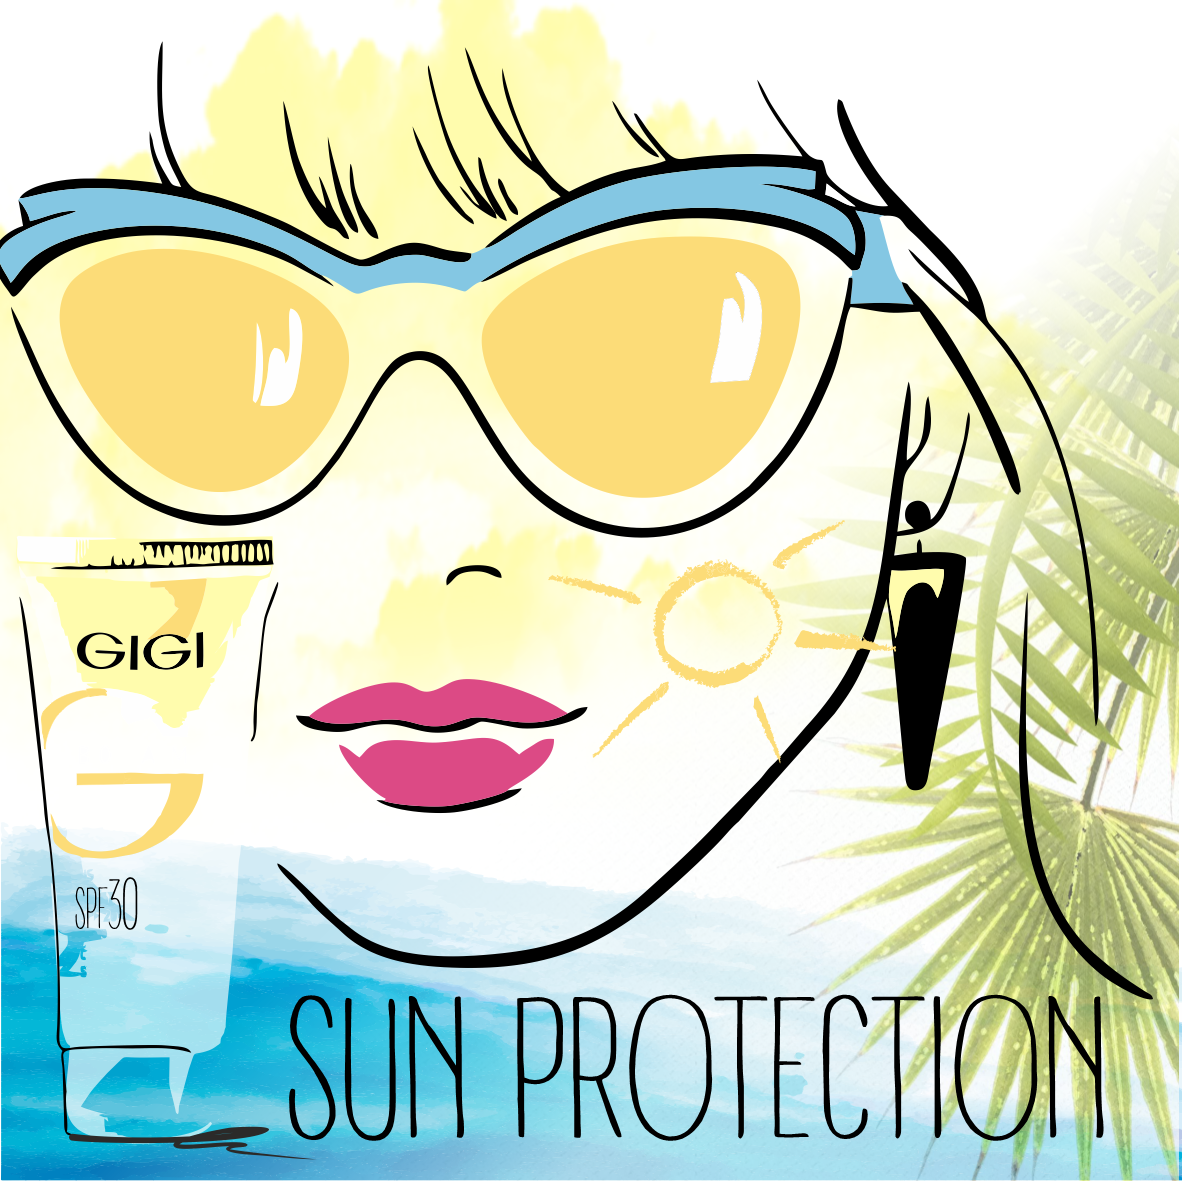  Солнцезащитные кремы – ухаживающие средства, действие которых направлено на нейтрализацию негативного влияния UVA и UVB-излучения на кожу.